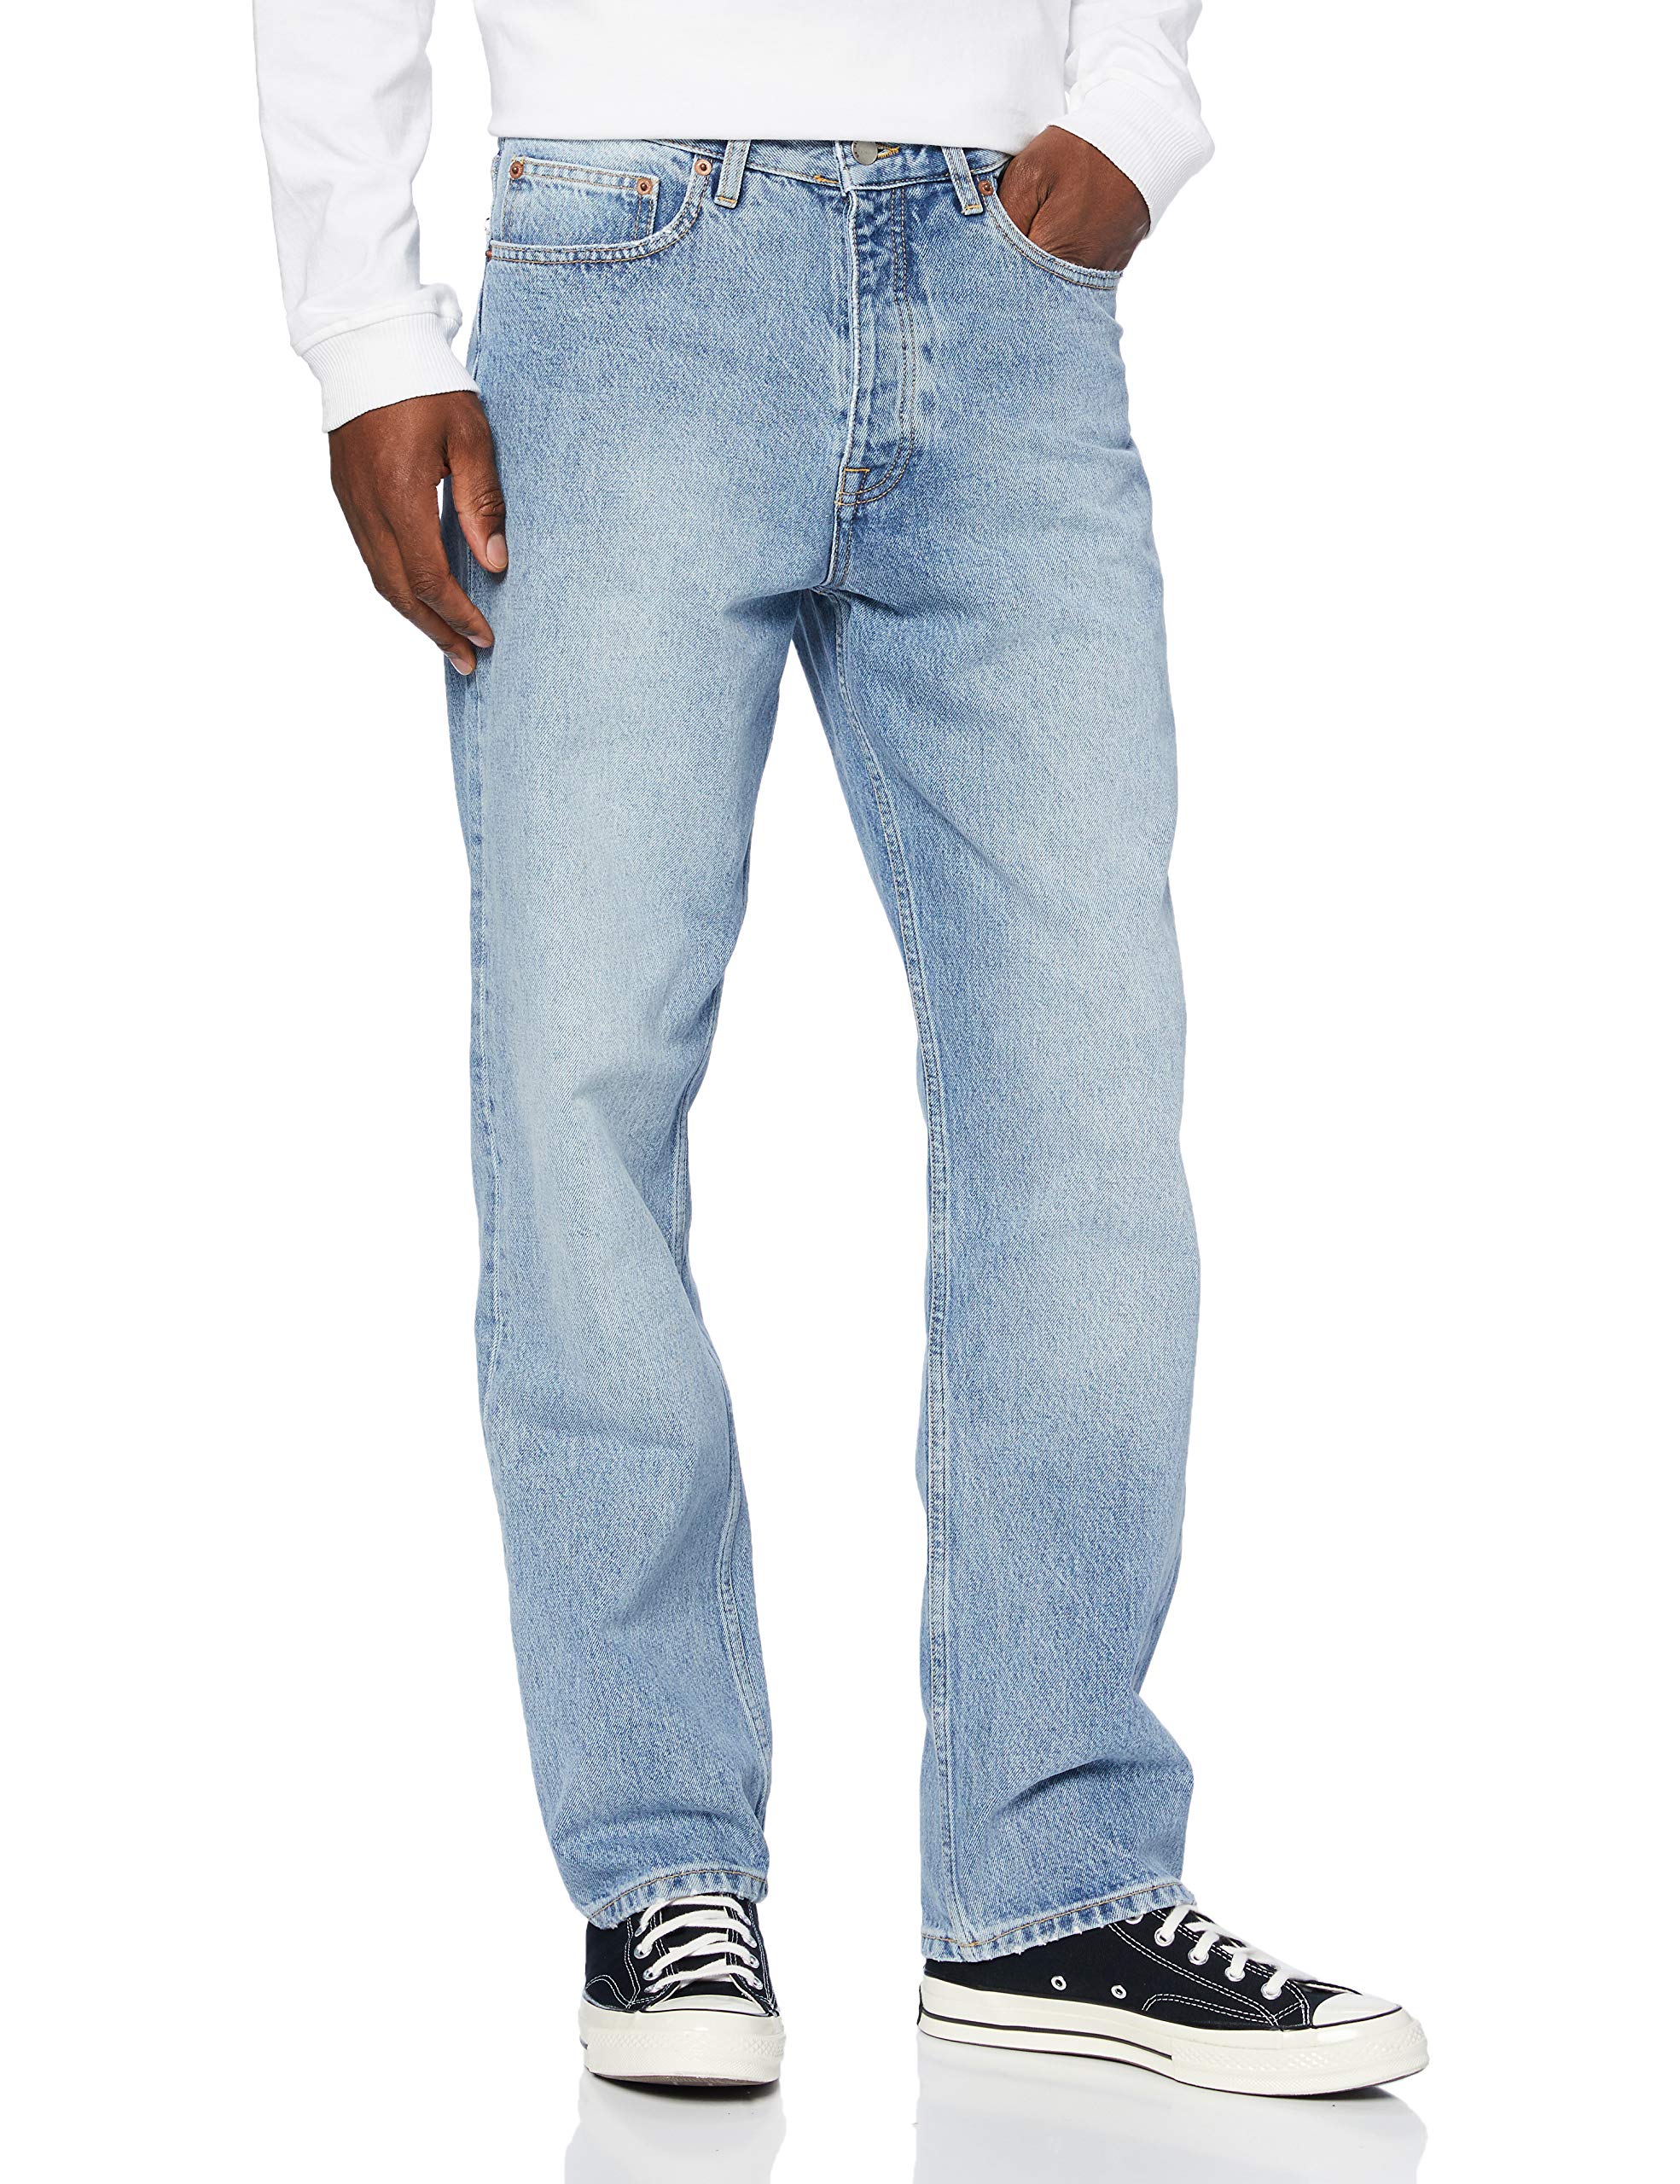 Dr. Denim Herren Dash Jeans, Stone Cast Blue, Bundweite: 84 cm, beinlänge: 81 cm